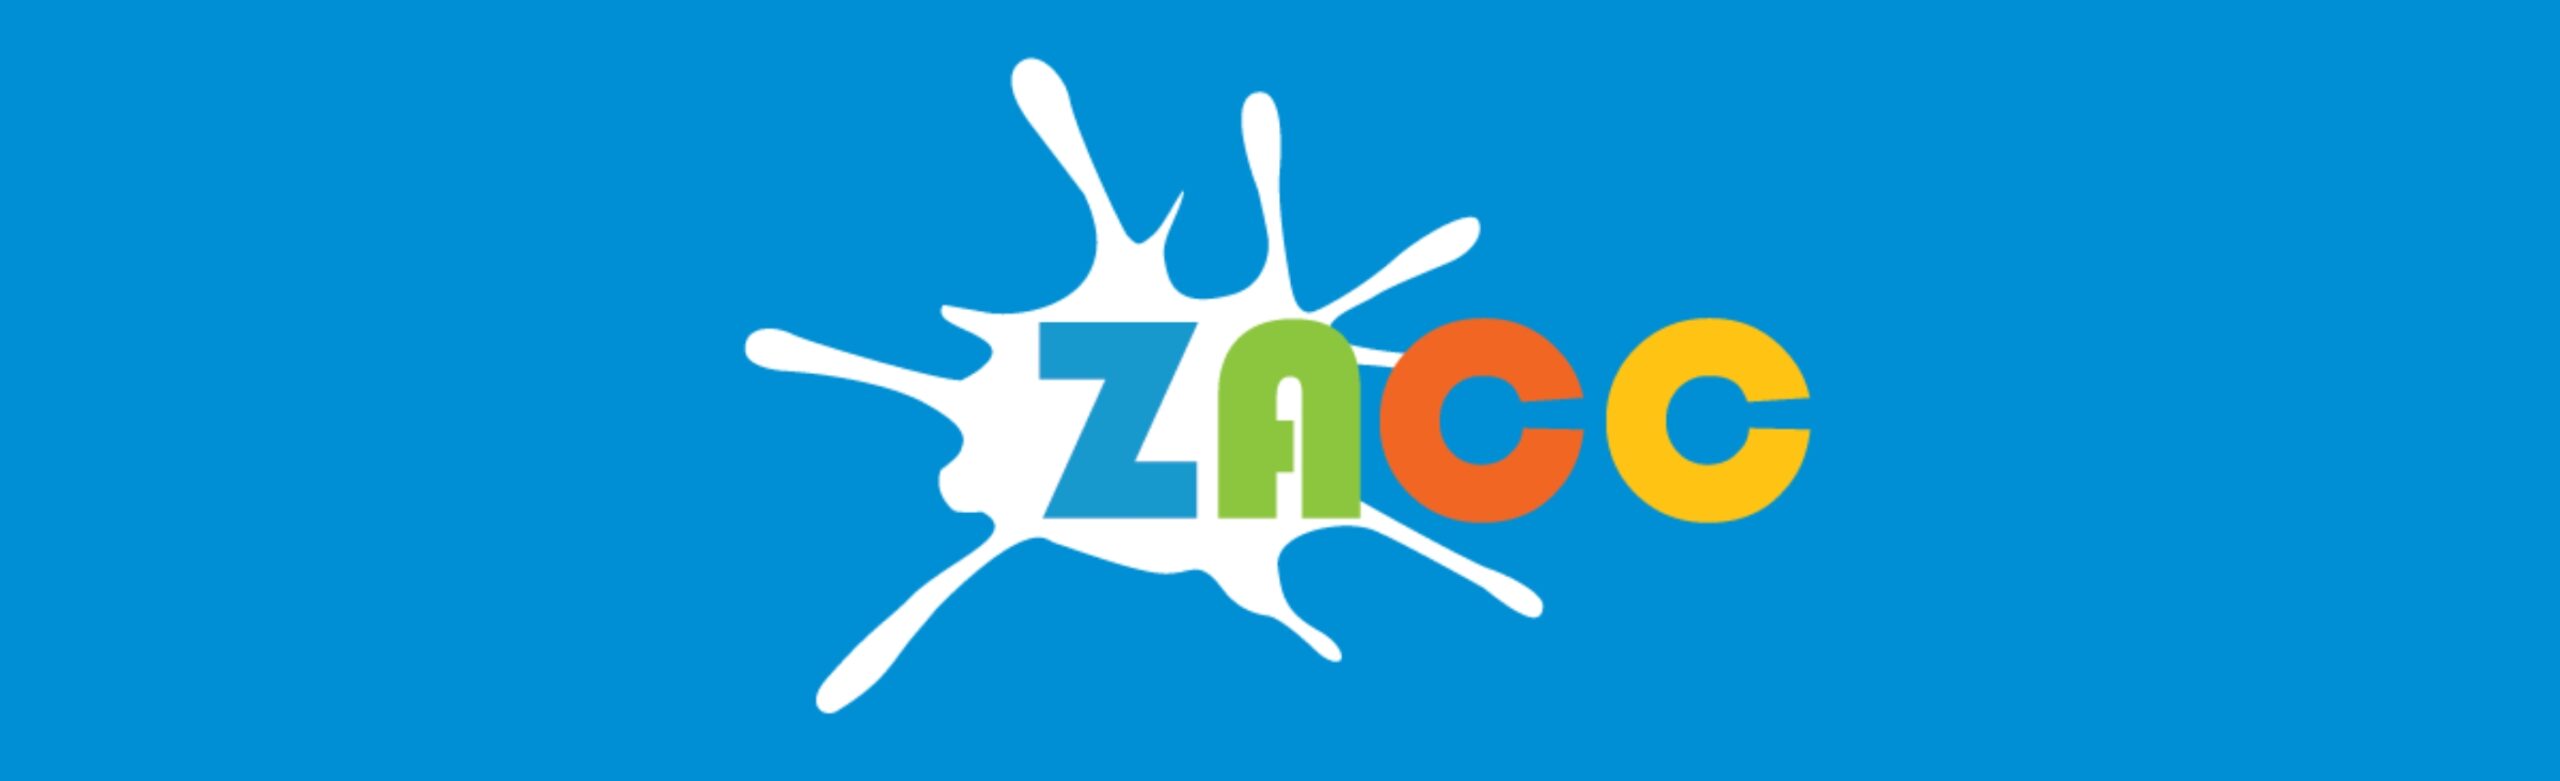 ZACC: Rock Camp